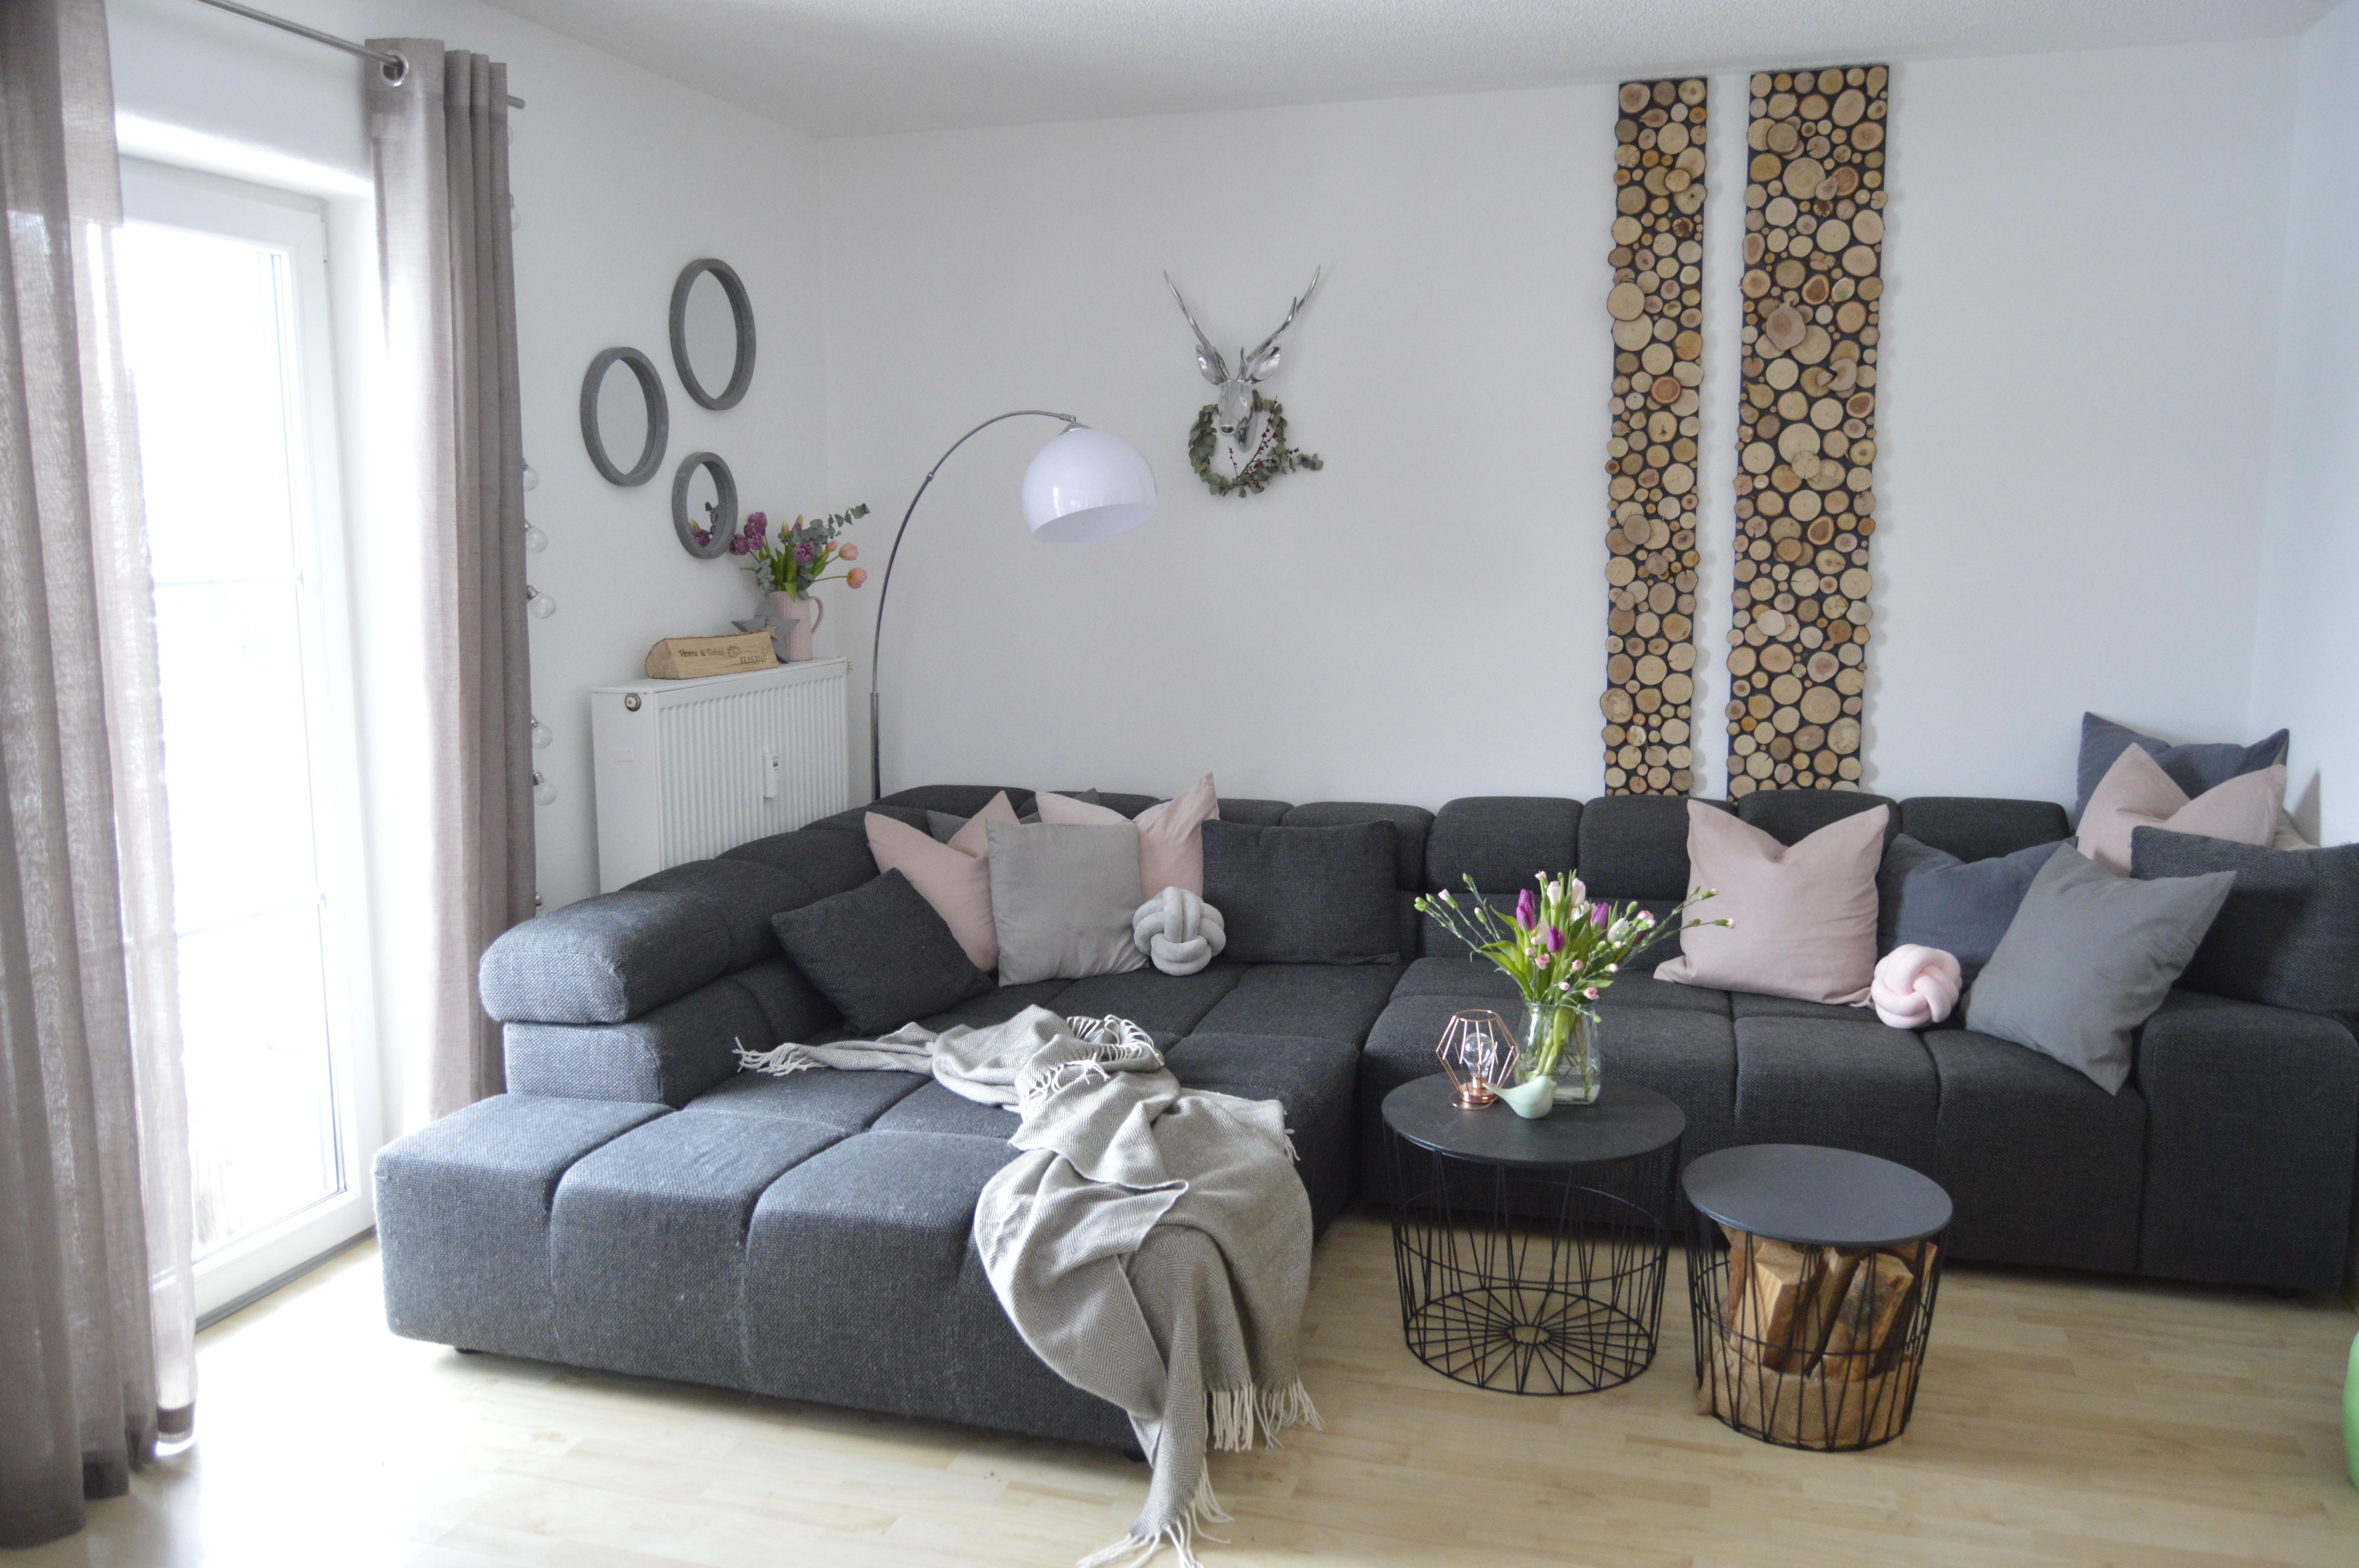 Lieblingsplatz
#wohnzimmer #couch #lazy #diy #holzwand #selbstgemacht #holz #deko #livingroom